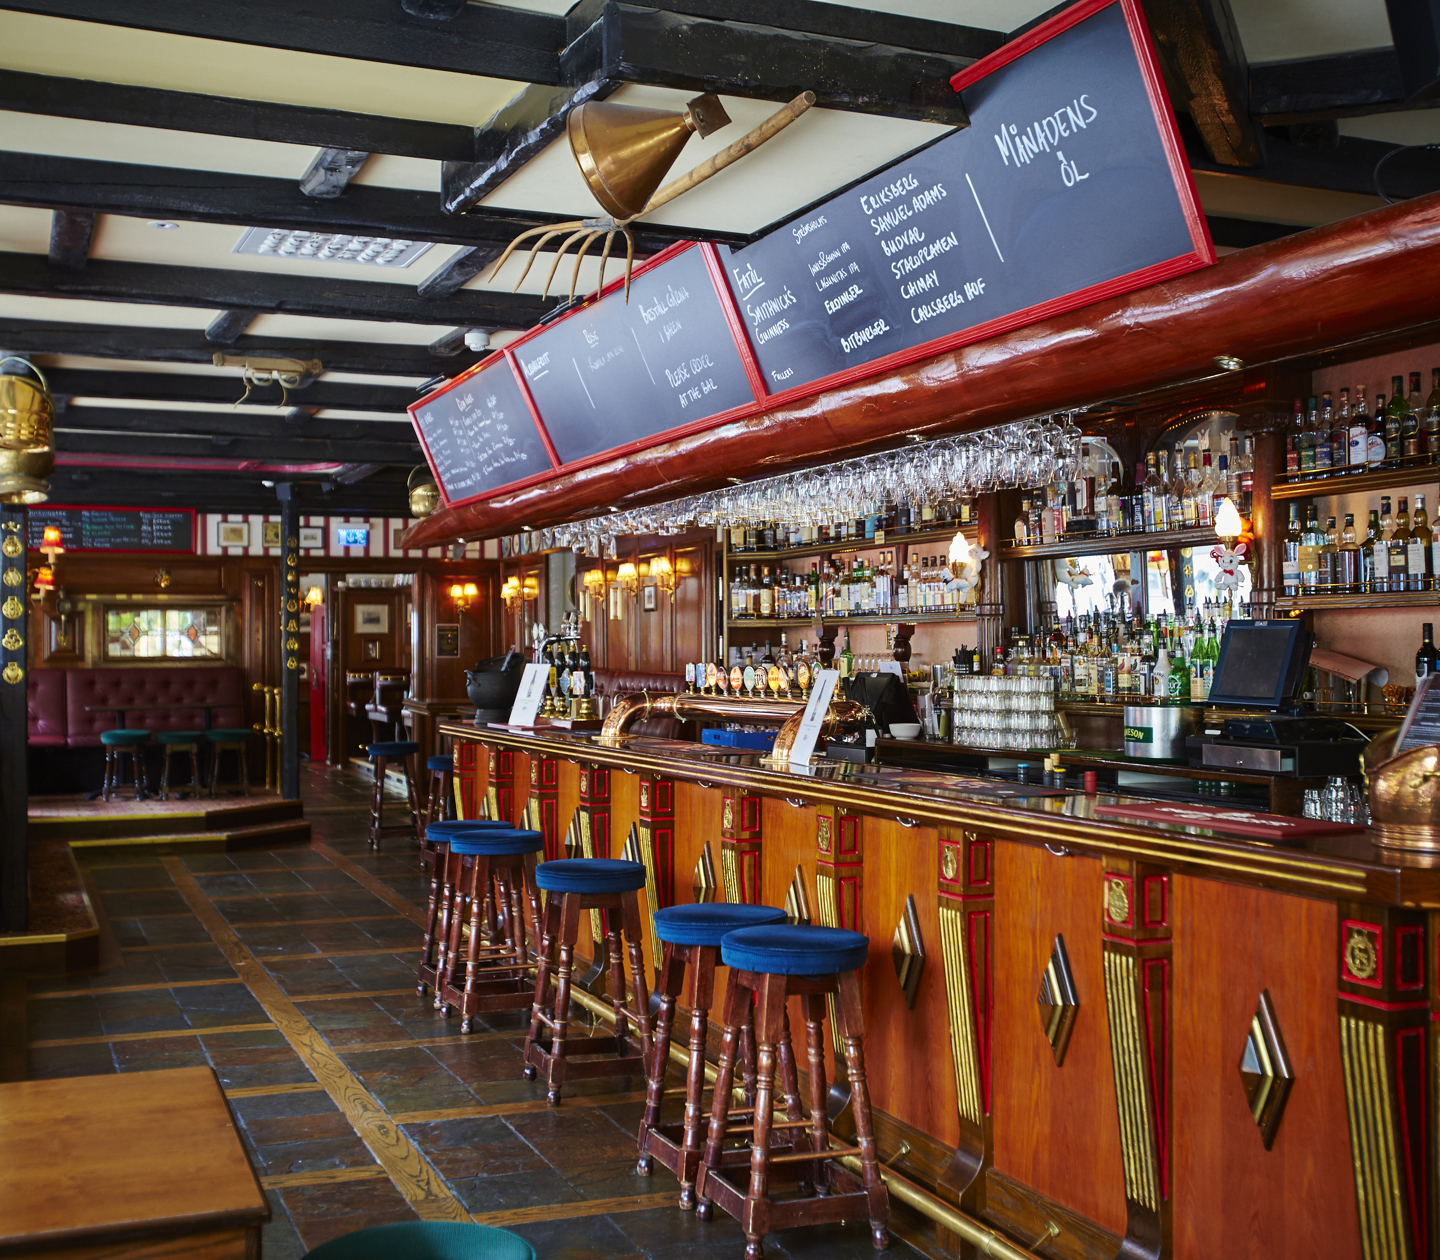 Klassisk engelsk pub med bar, barstolar och menyer